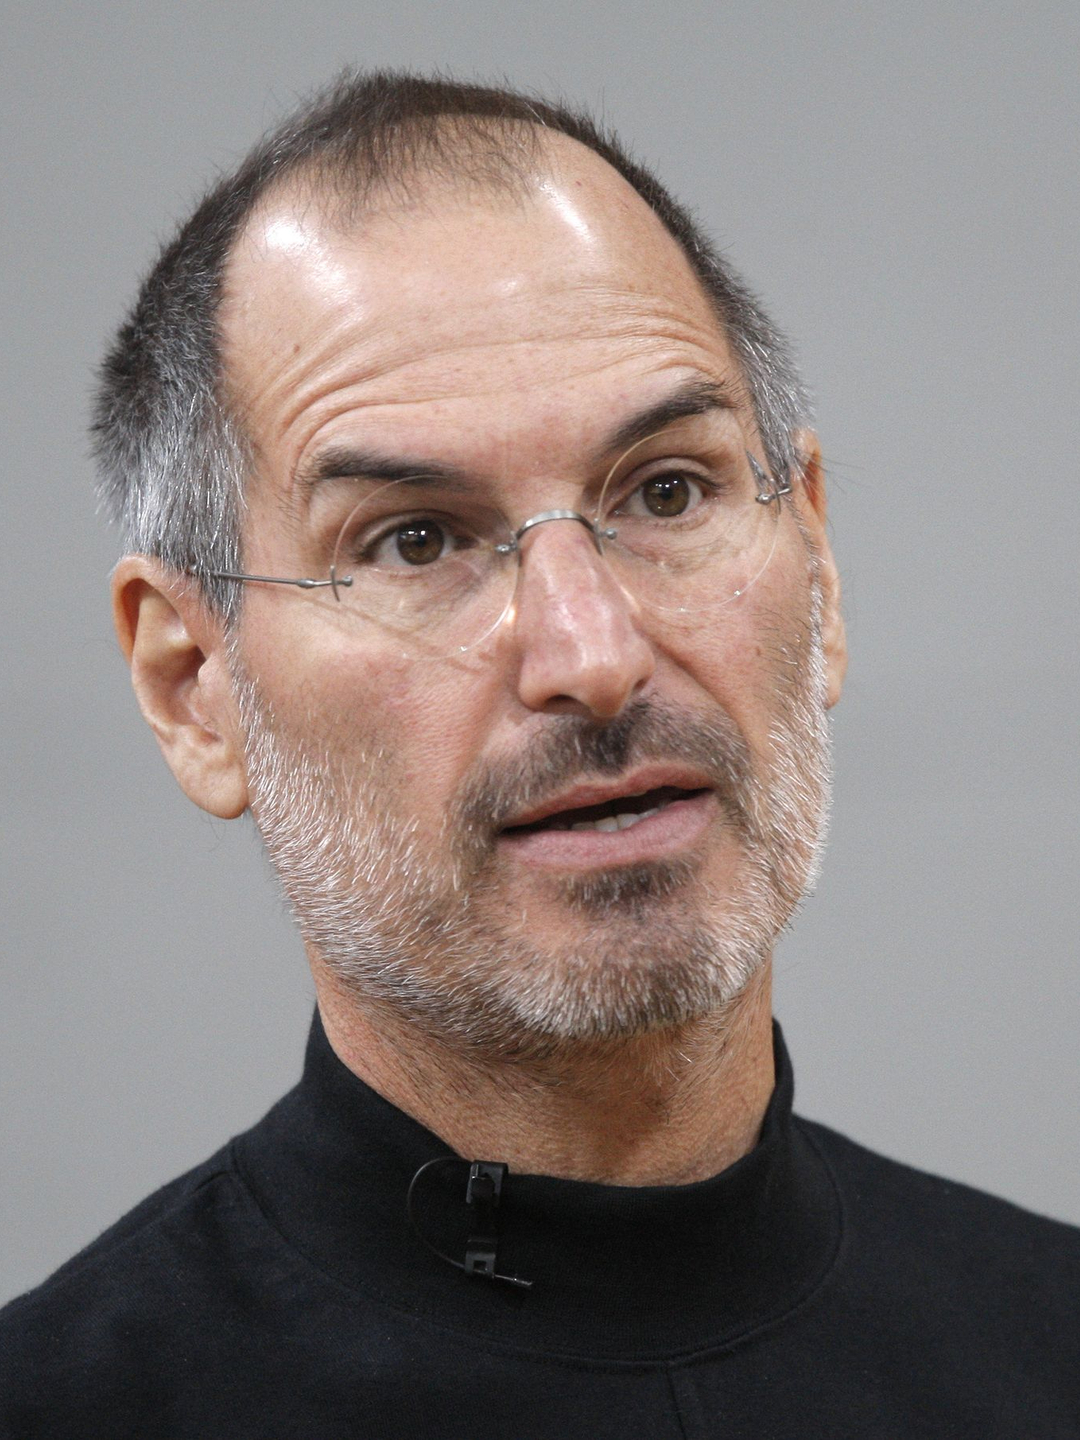 Steve Jobs young pics